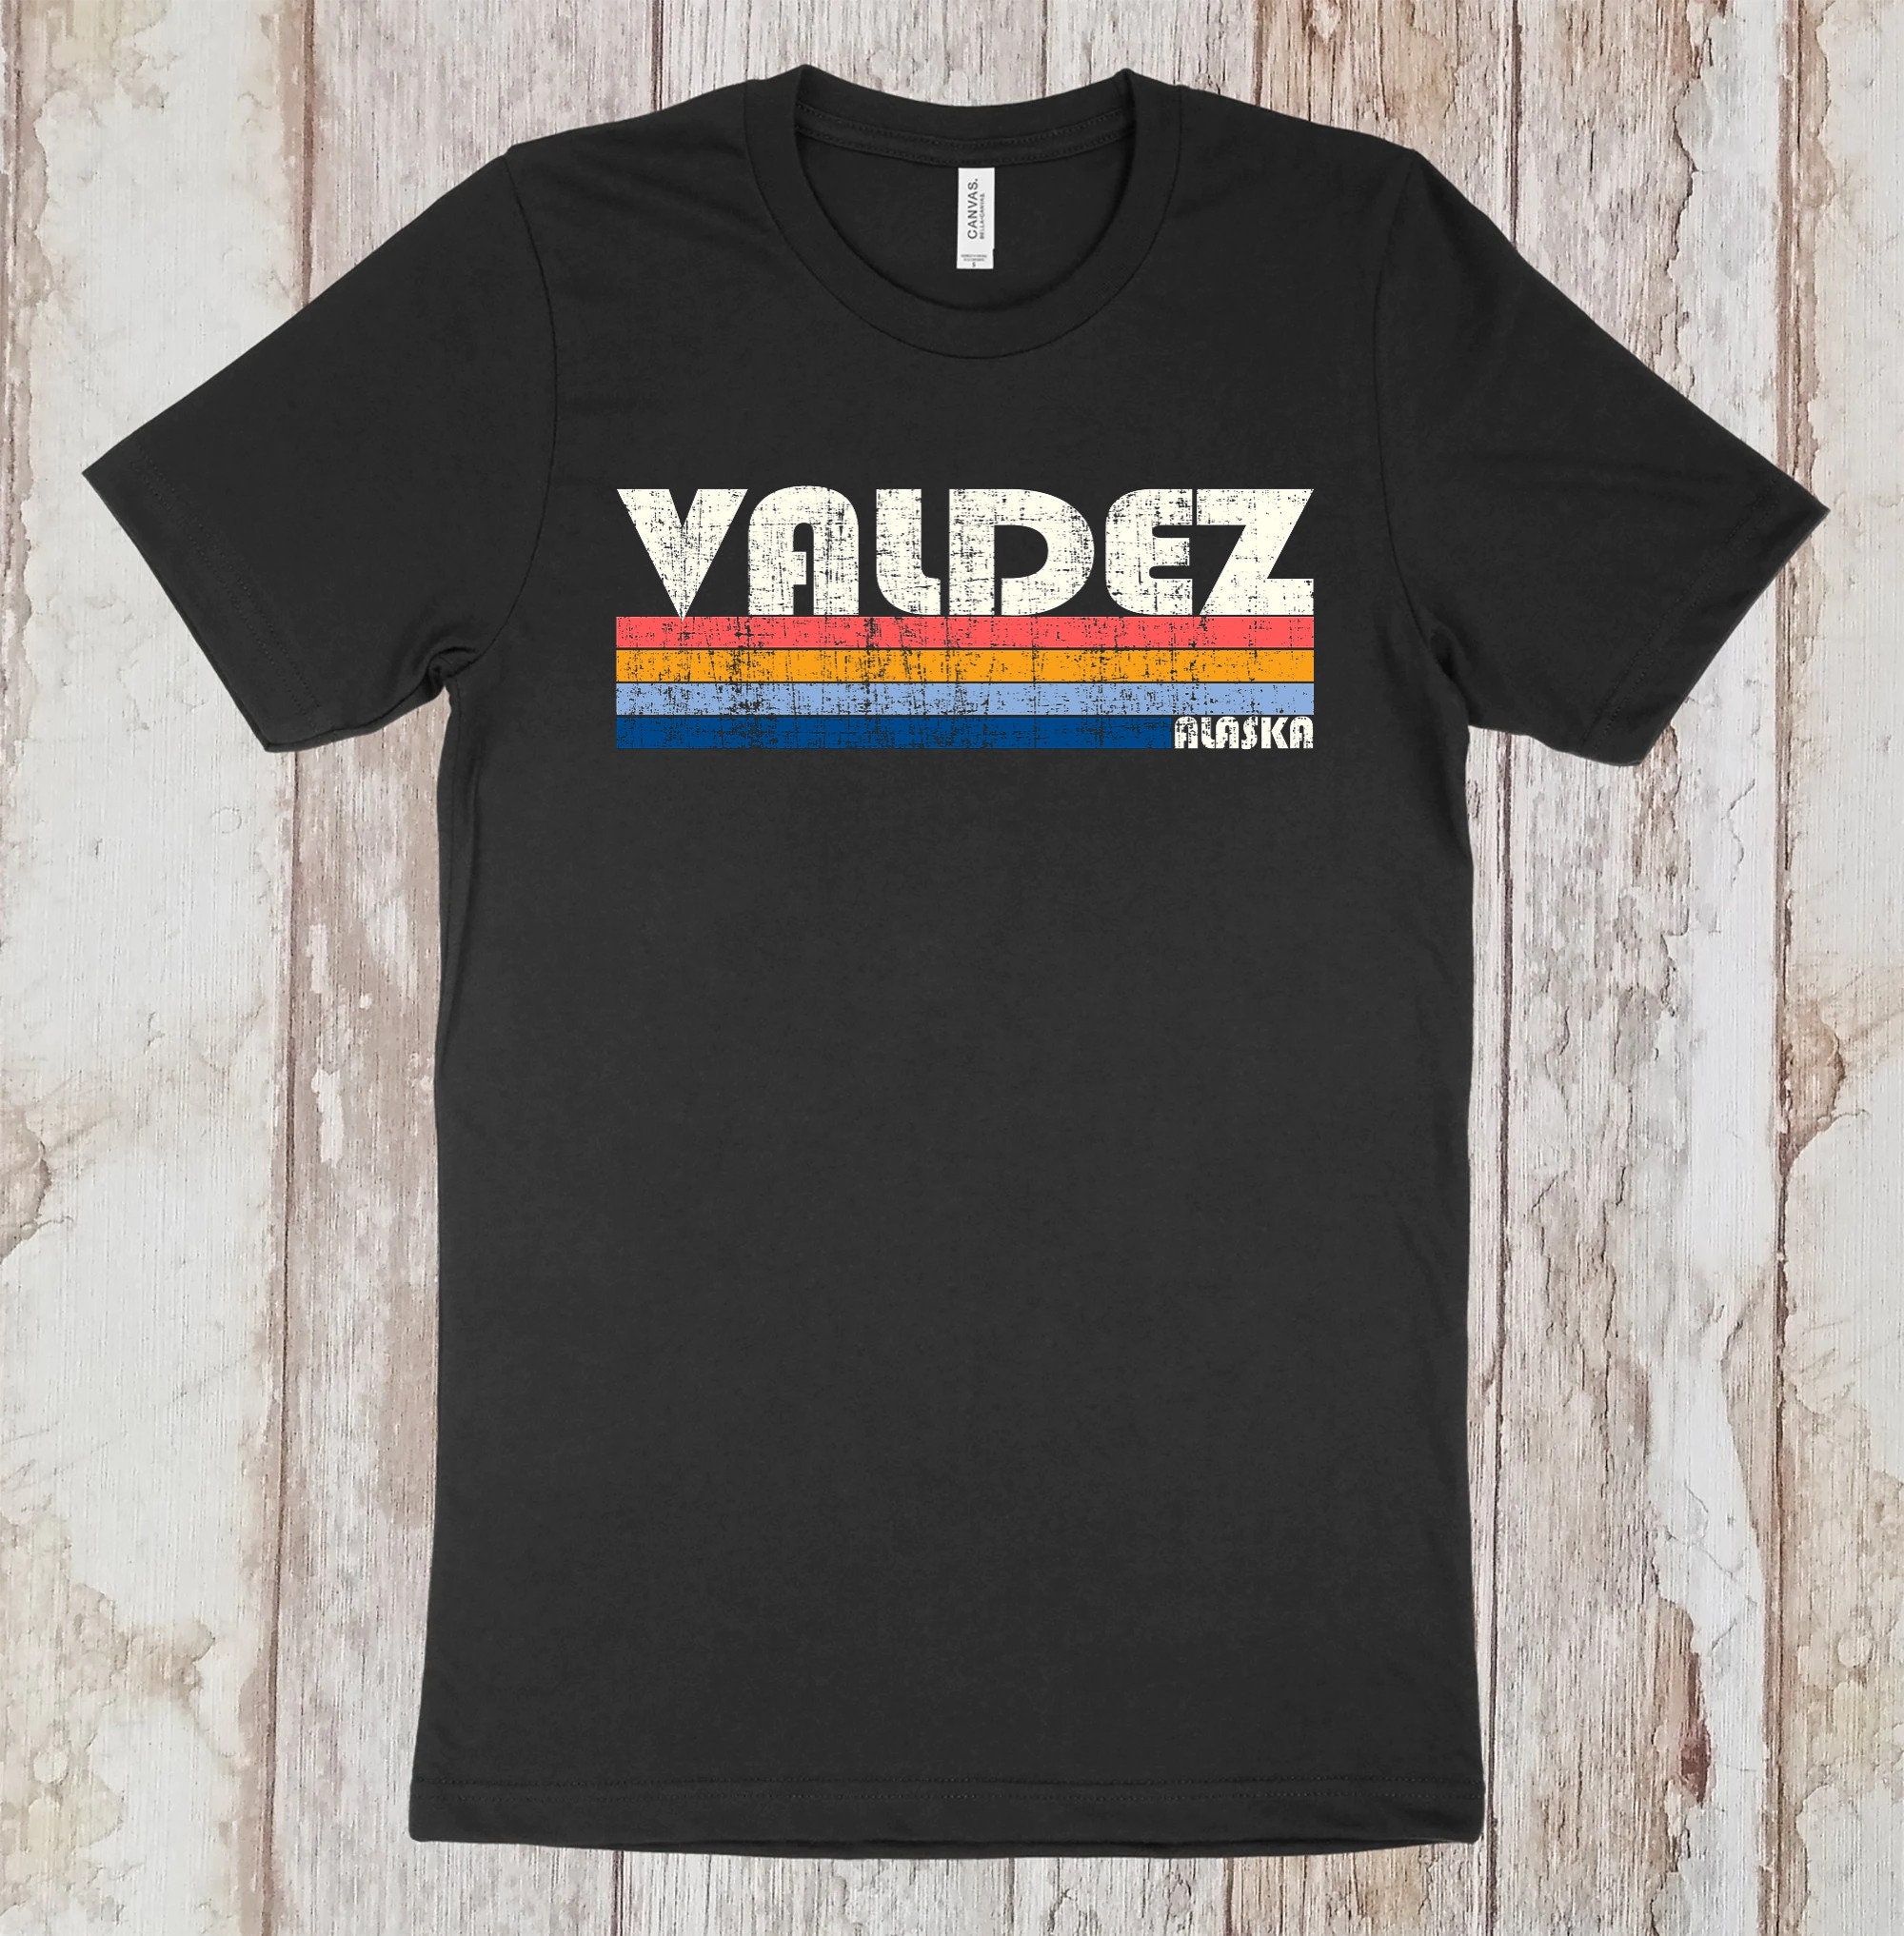 Rockatee Framber Valdez 'The Framchise' Retro T-Shirt